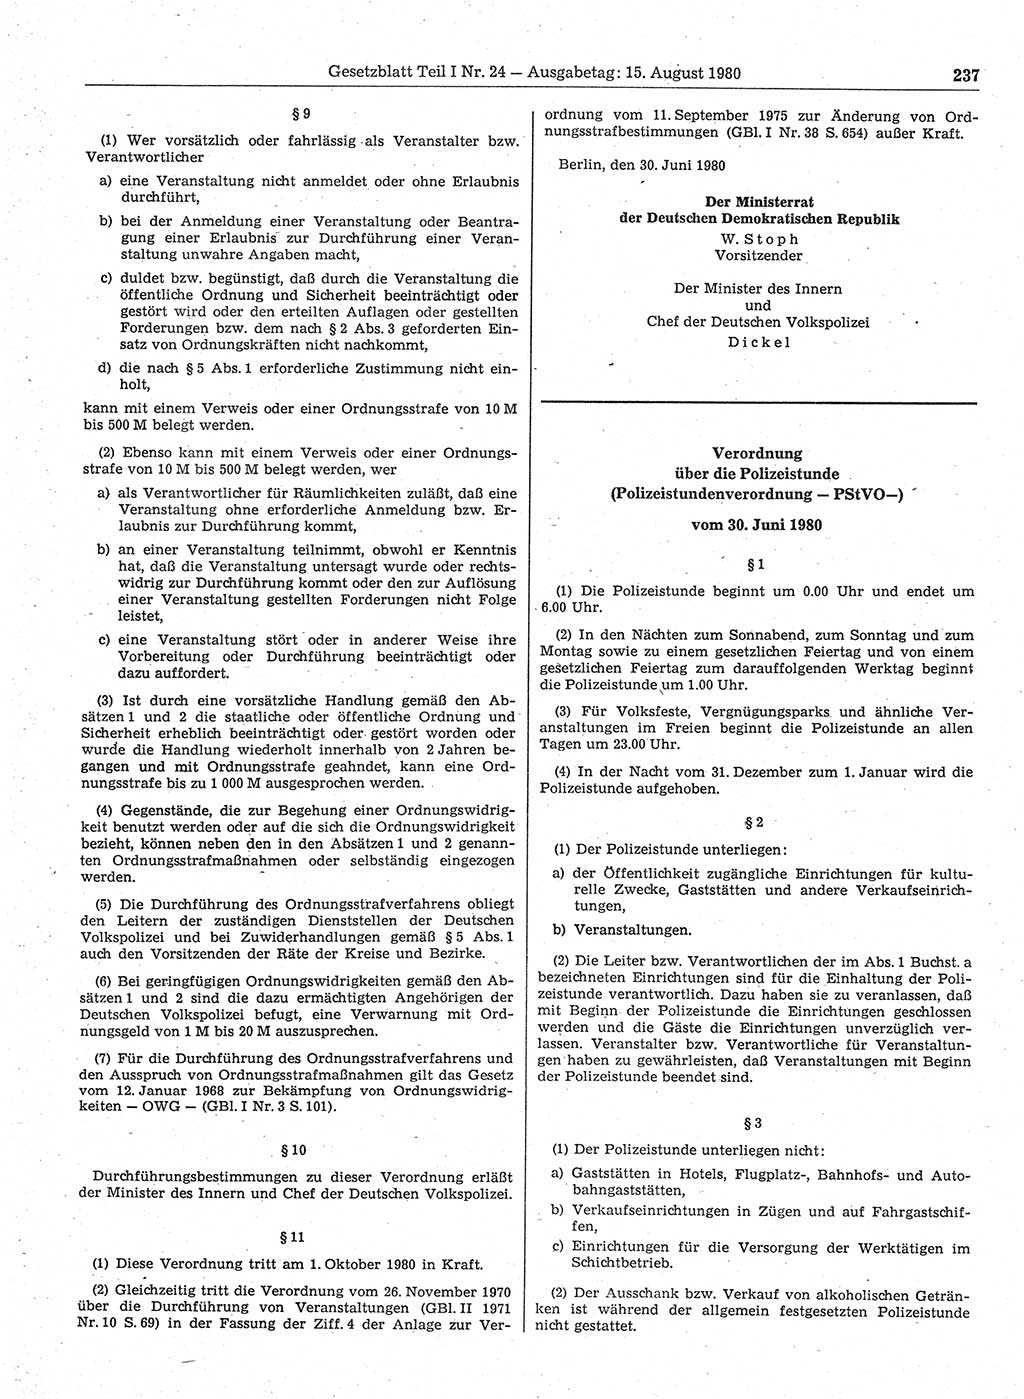 Gesetzblatt (GBl.) der Deutschen Demokratischen Republik (DDR) Teil Ⅰ 1980, Seite 237 (GBl. DDR Ⅰ 1980, S. 237)